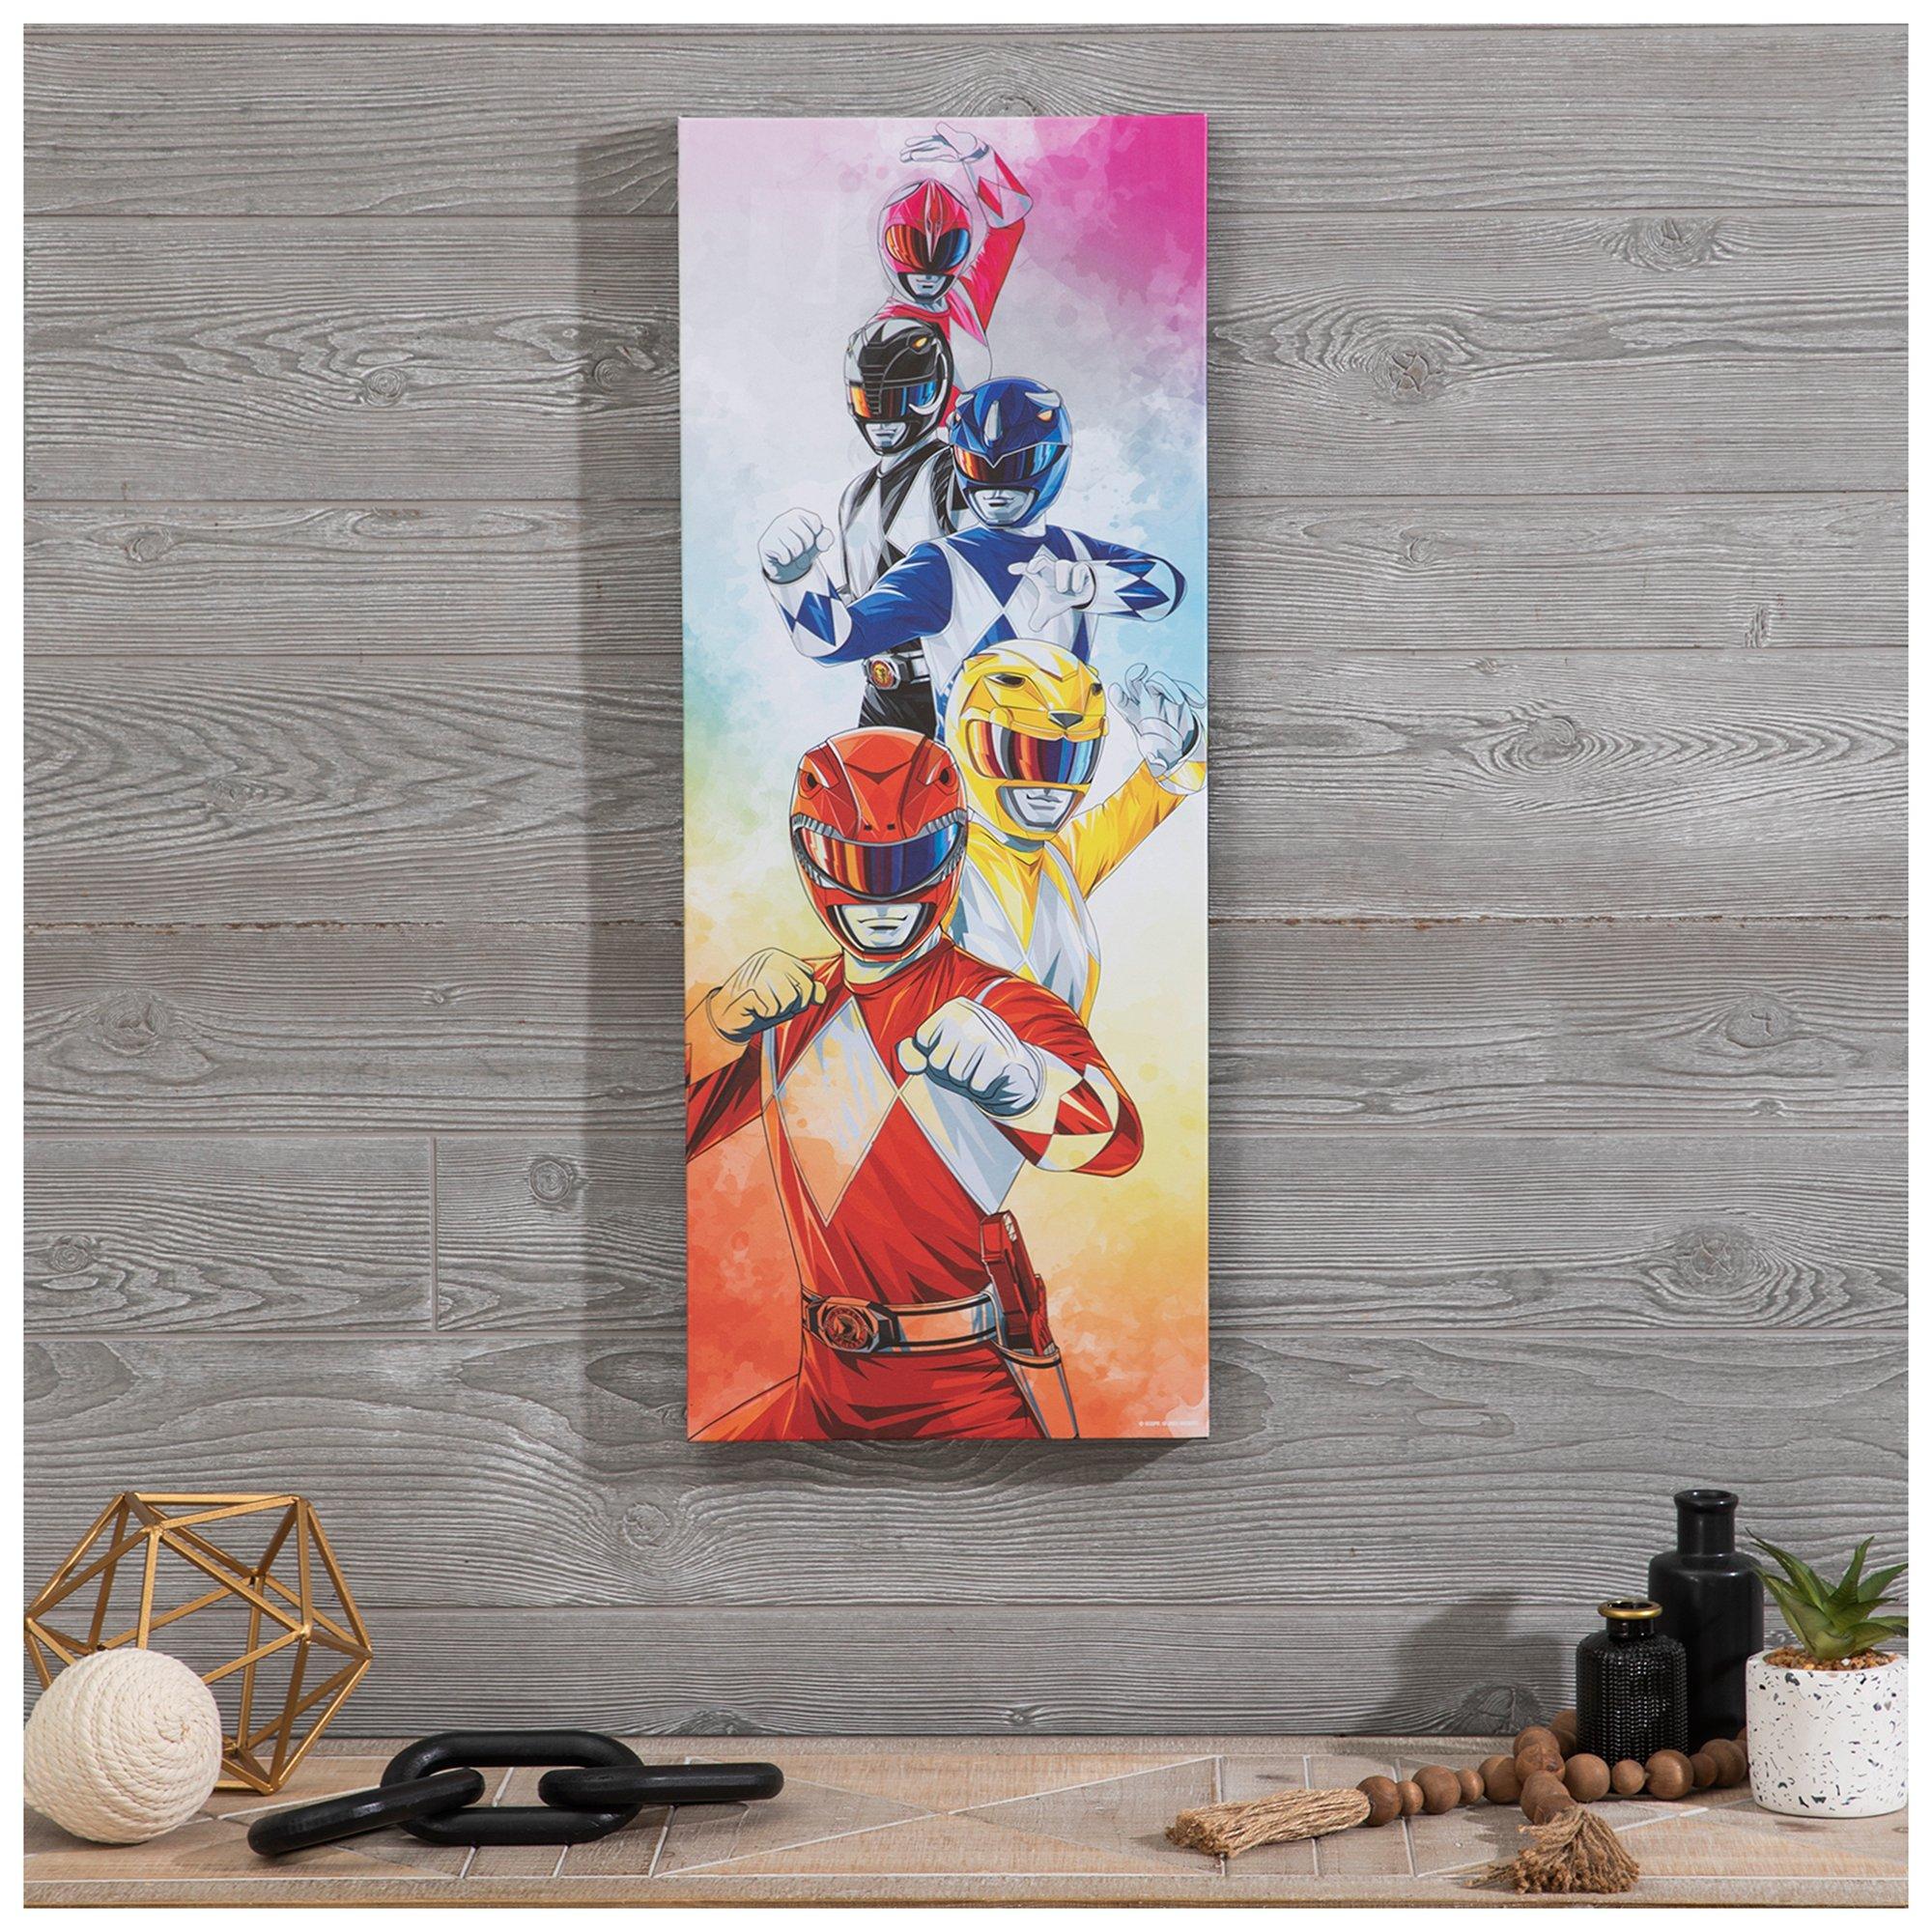 Mighty Morphin' Power Rangers Canvas Wall Decor | Hobby Lobby | 6006415